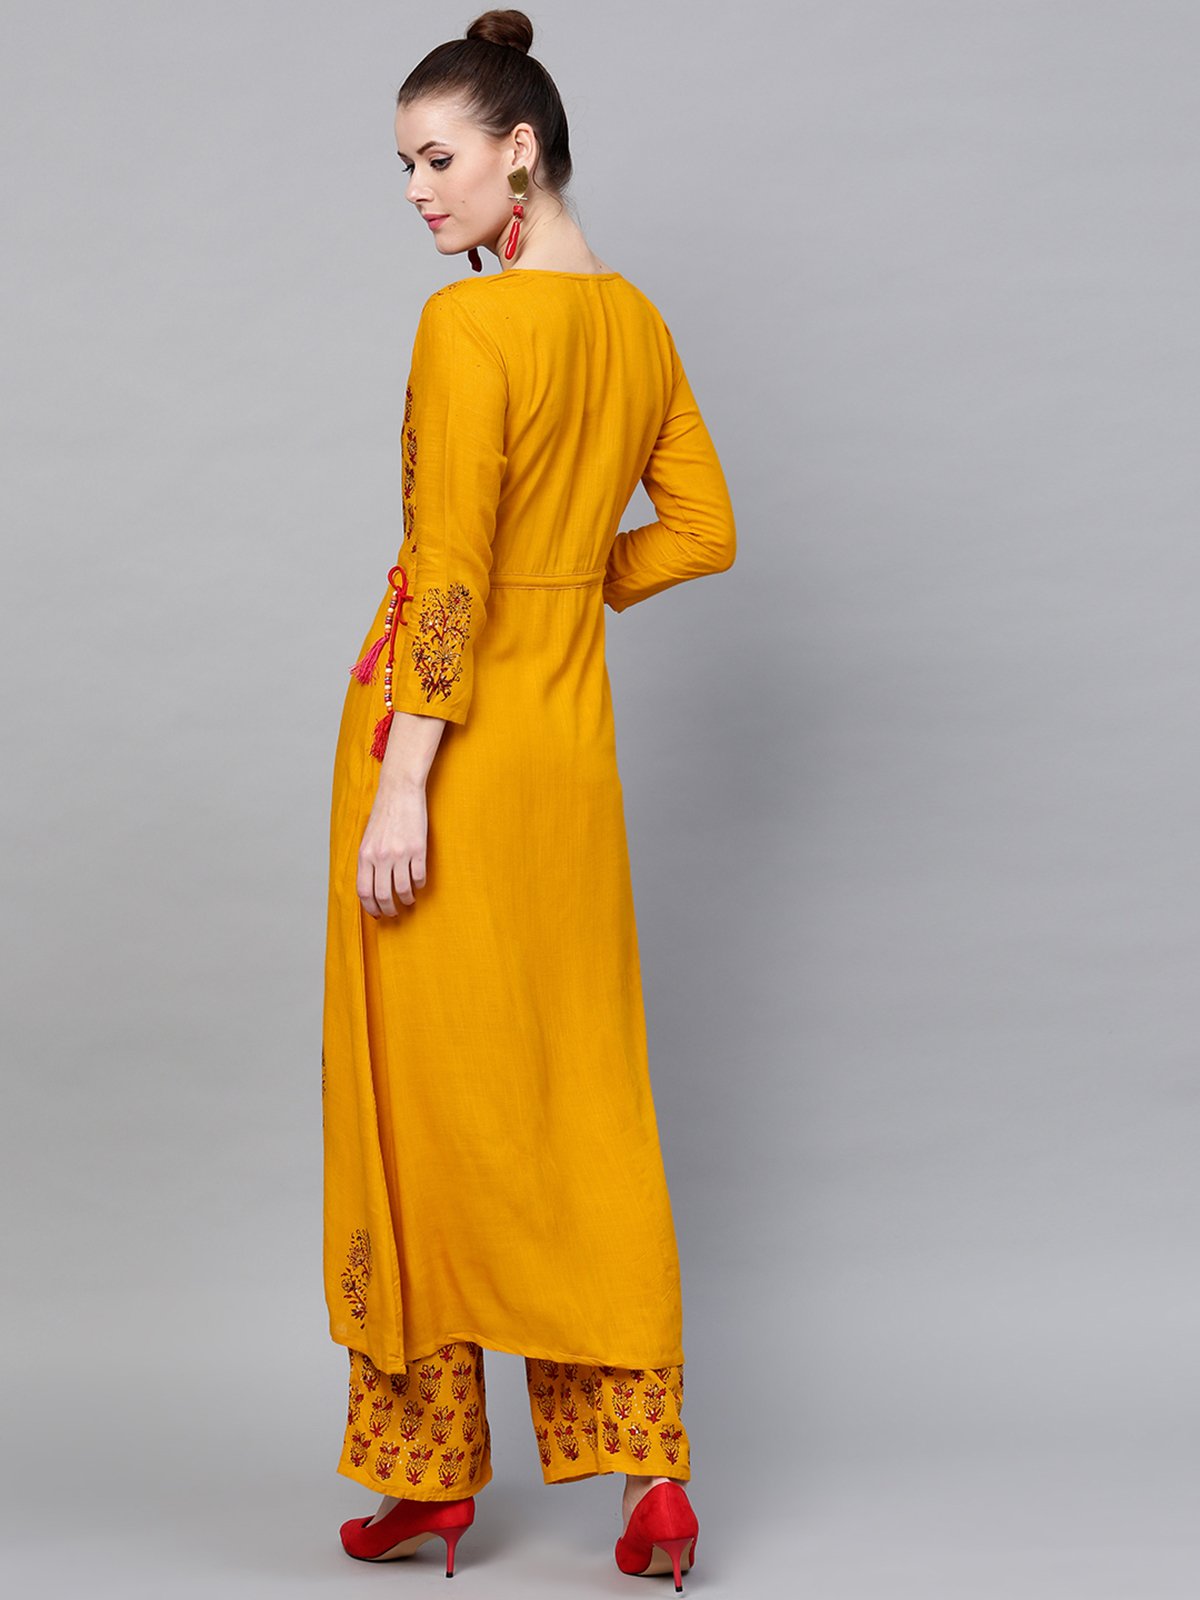 Ishin Women's Rayon Mustard Yellow Embellished Anarkali Kurta Palazzo Set